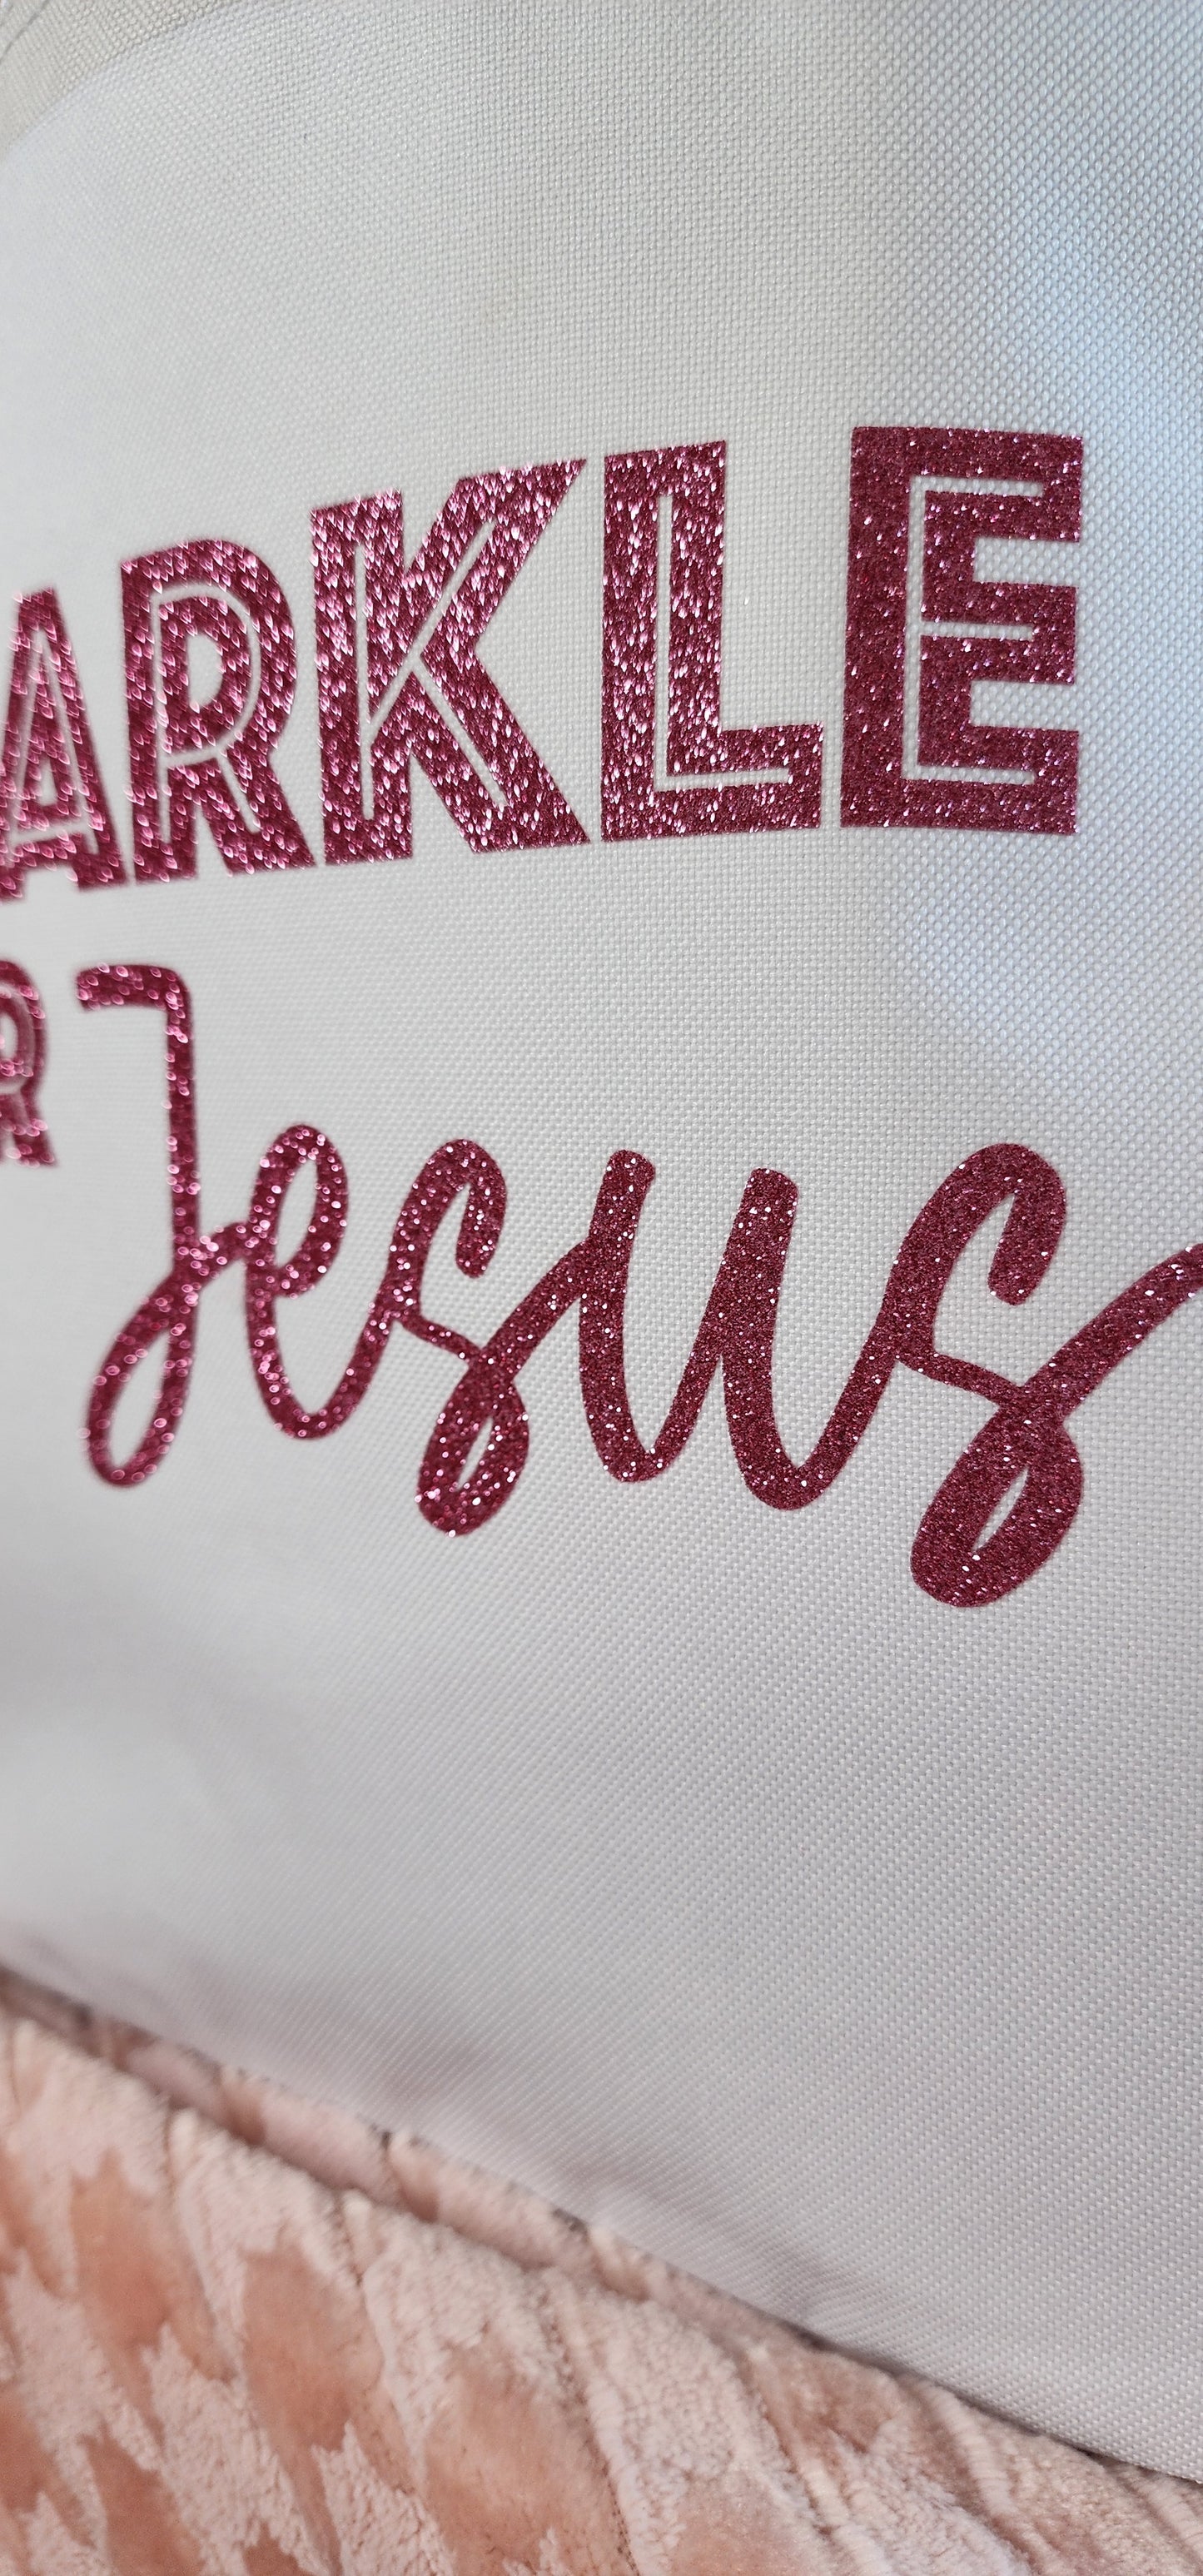 Sparkle for Jesus - Tote Bag